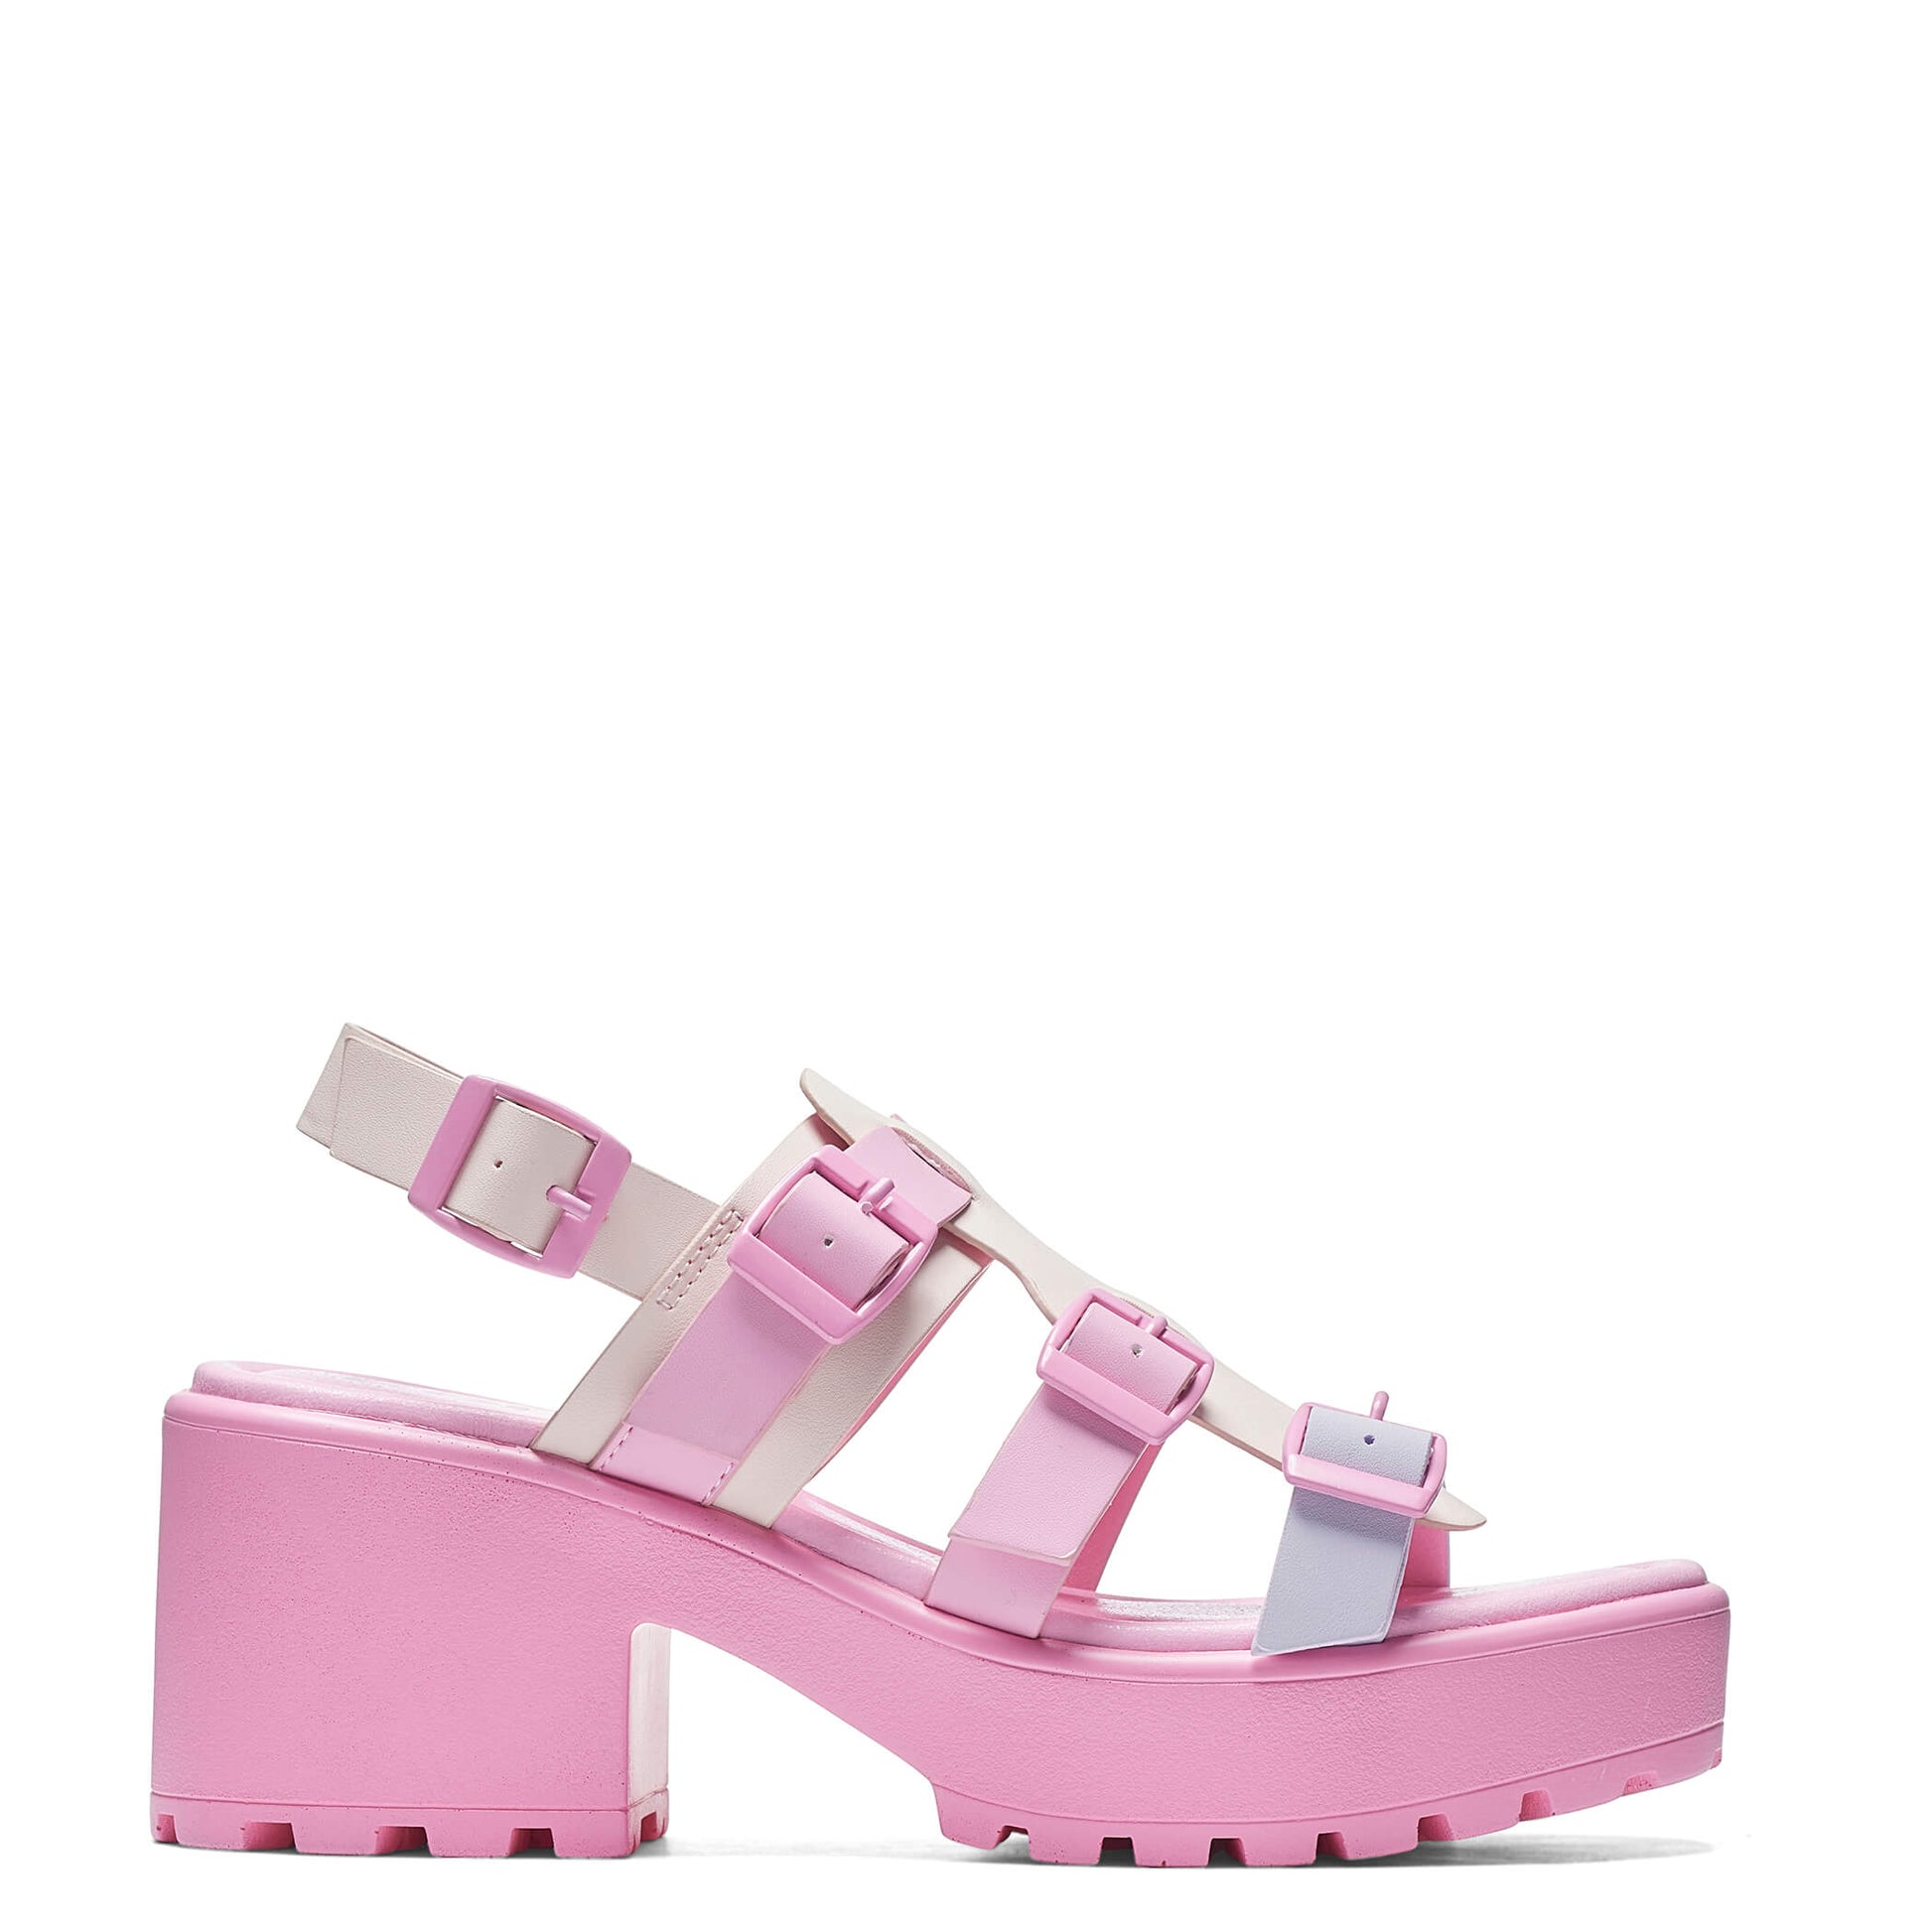 Sugar Season Chunky Buckle Sandals - Pink - Sandals - KOI Footwear - Pink - Side View